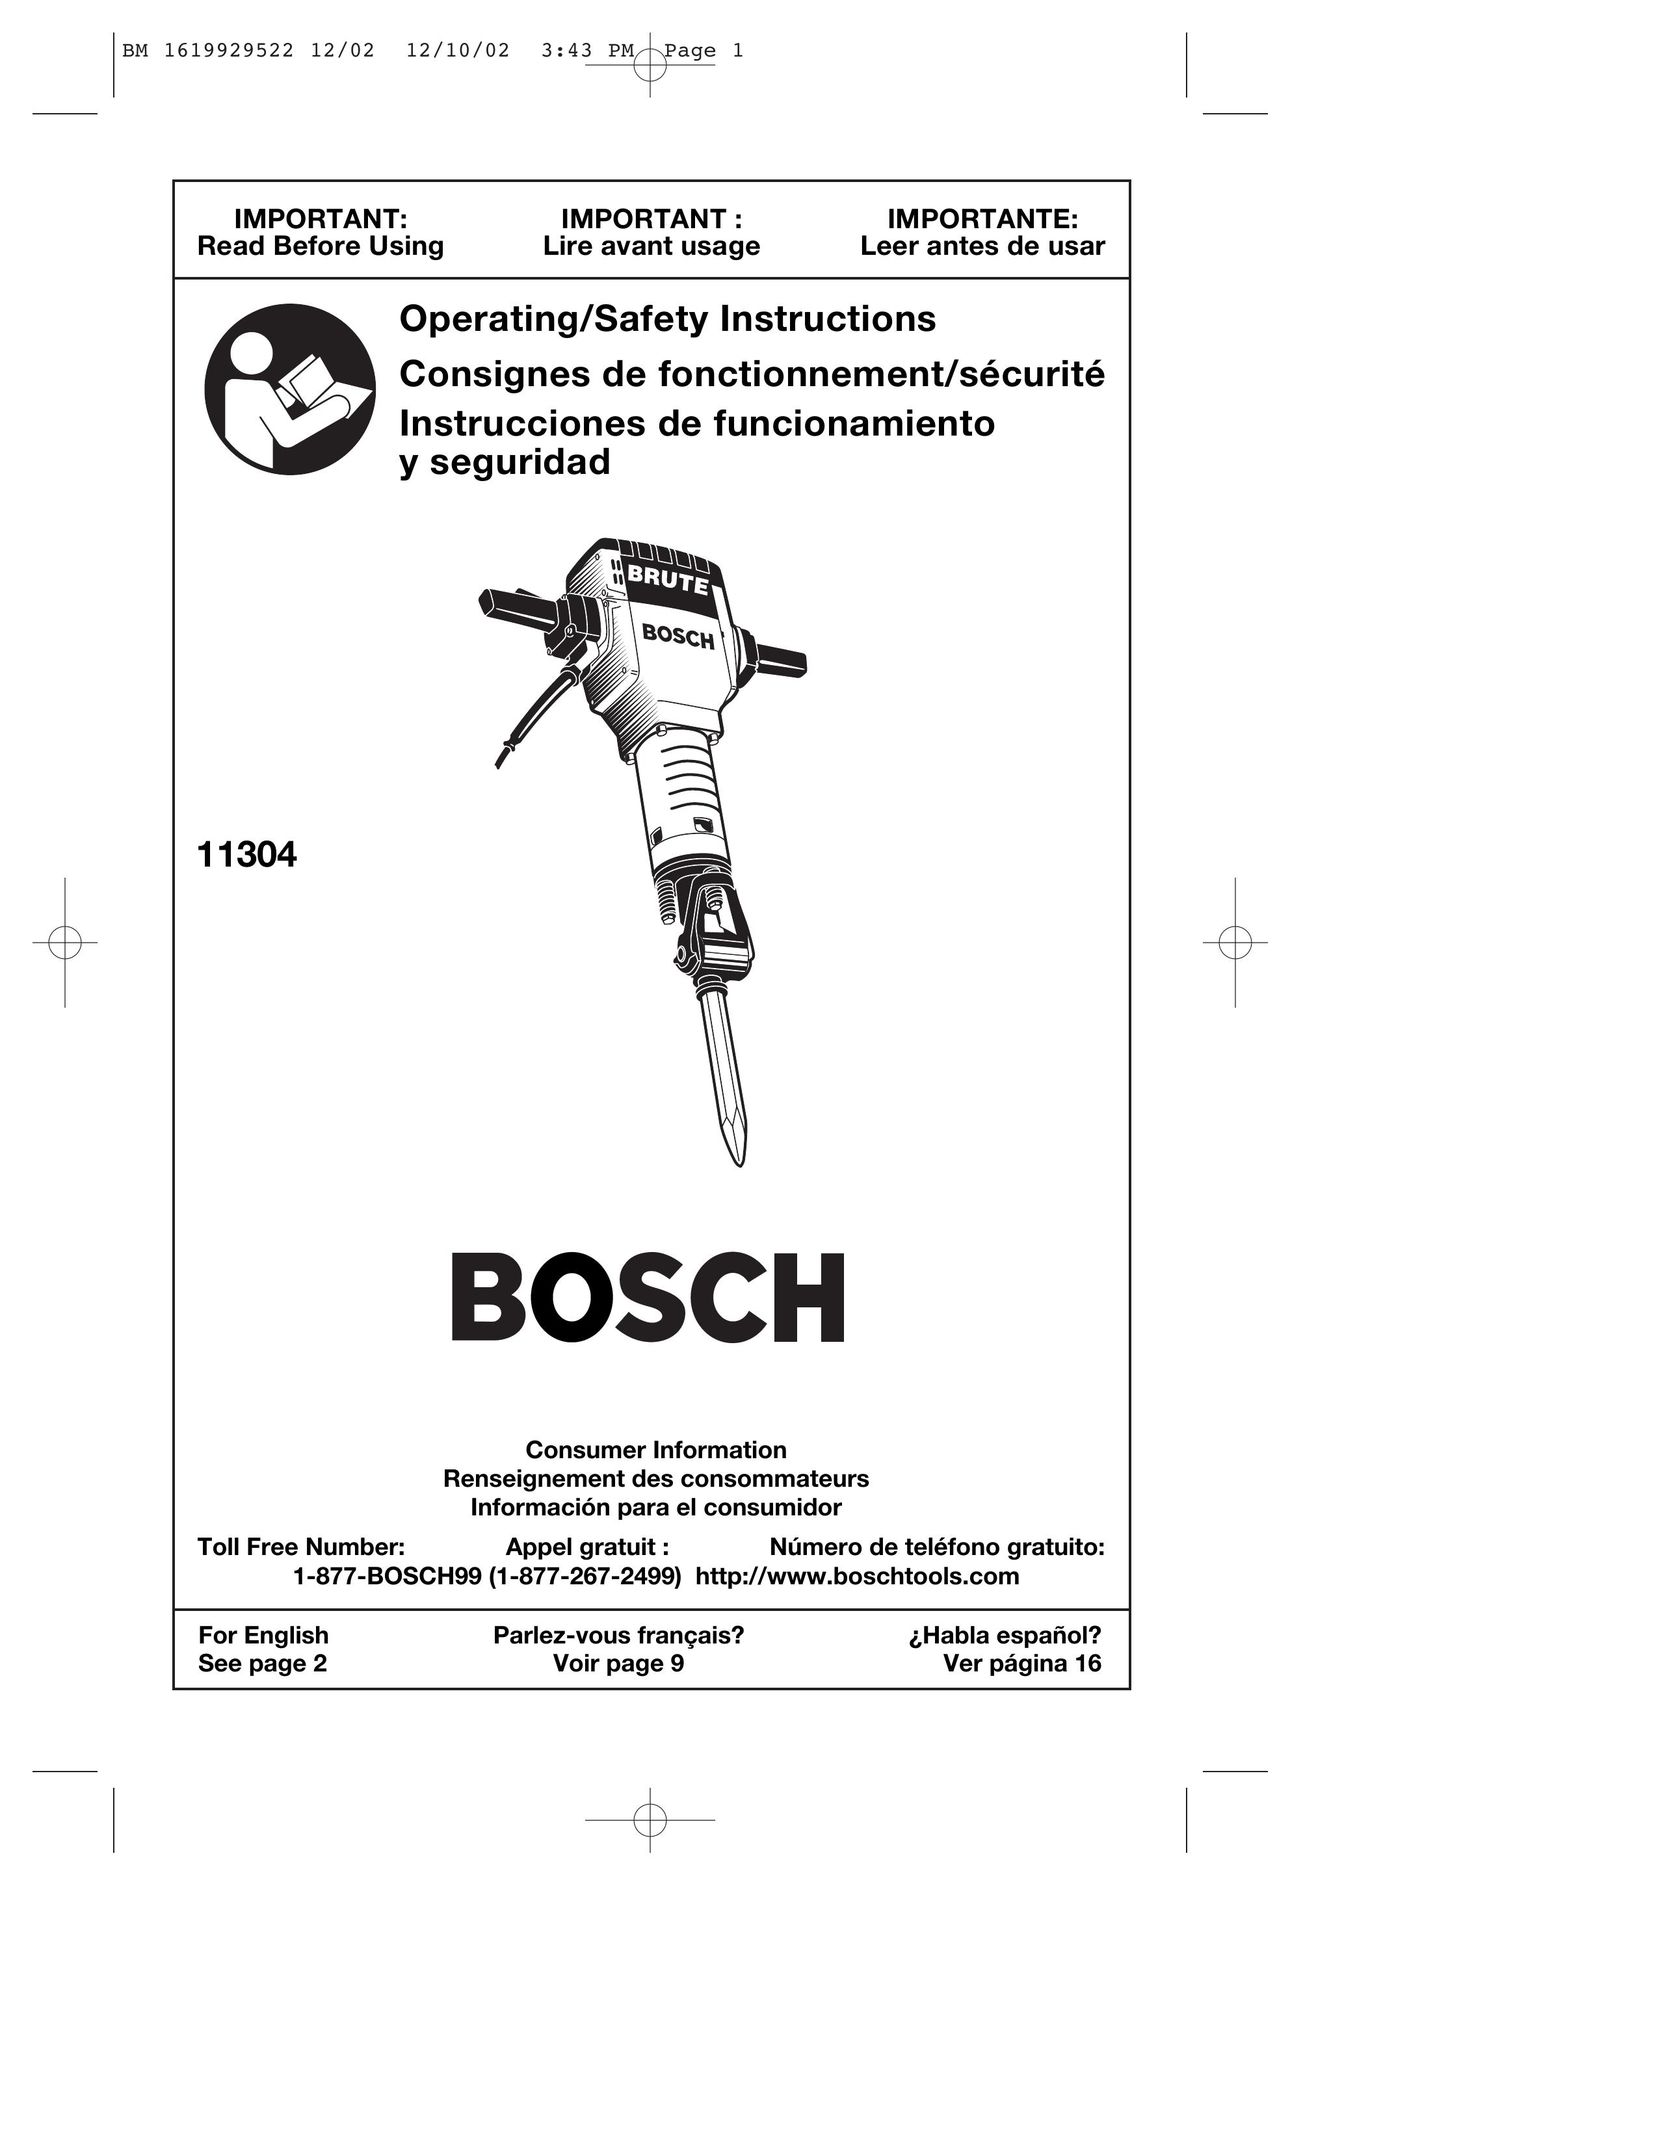 Bosch Power Tools 11304K Power Hammer User Manual